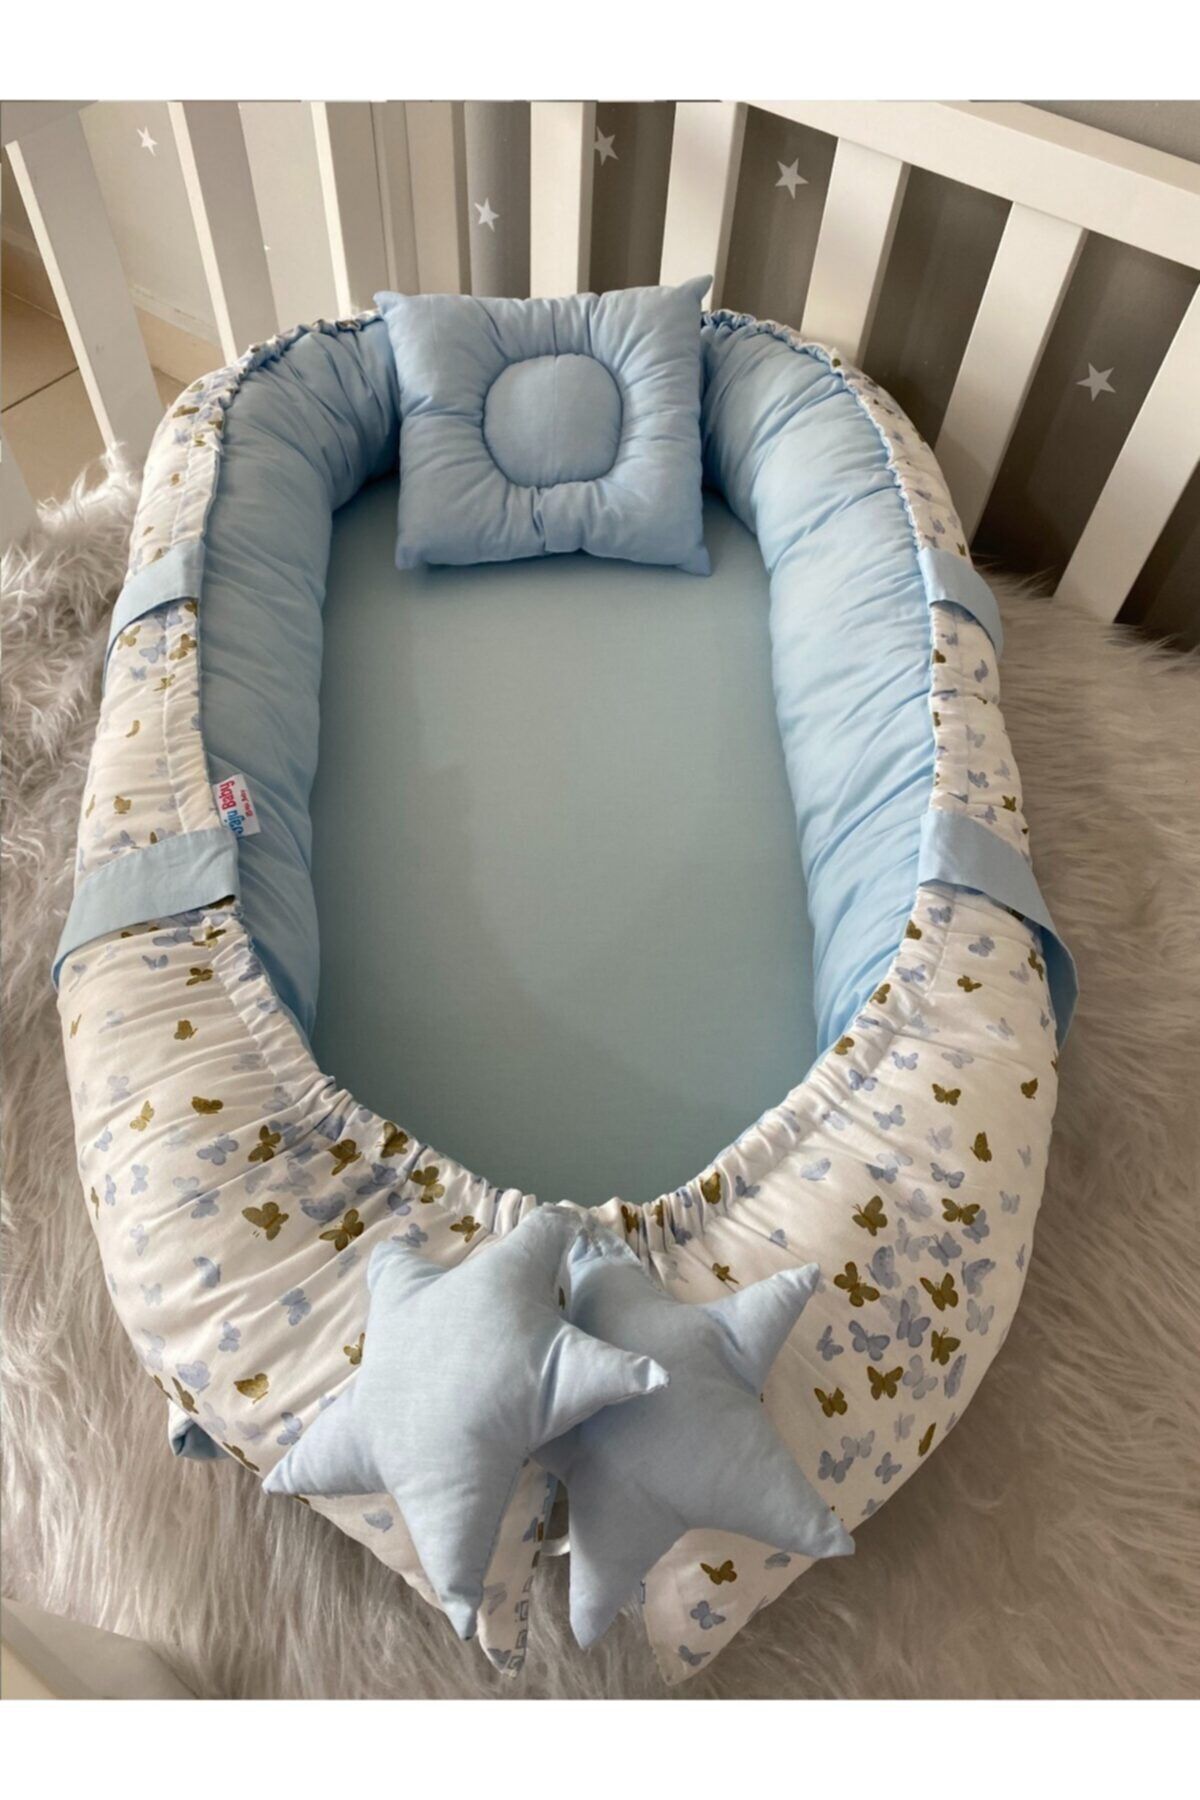 Jaju Baby Nest Mavi Kelebek Desenli Lüx Tasarım Jaju-babynest Anne Yanı Bebek Yatağı